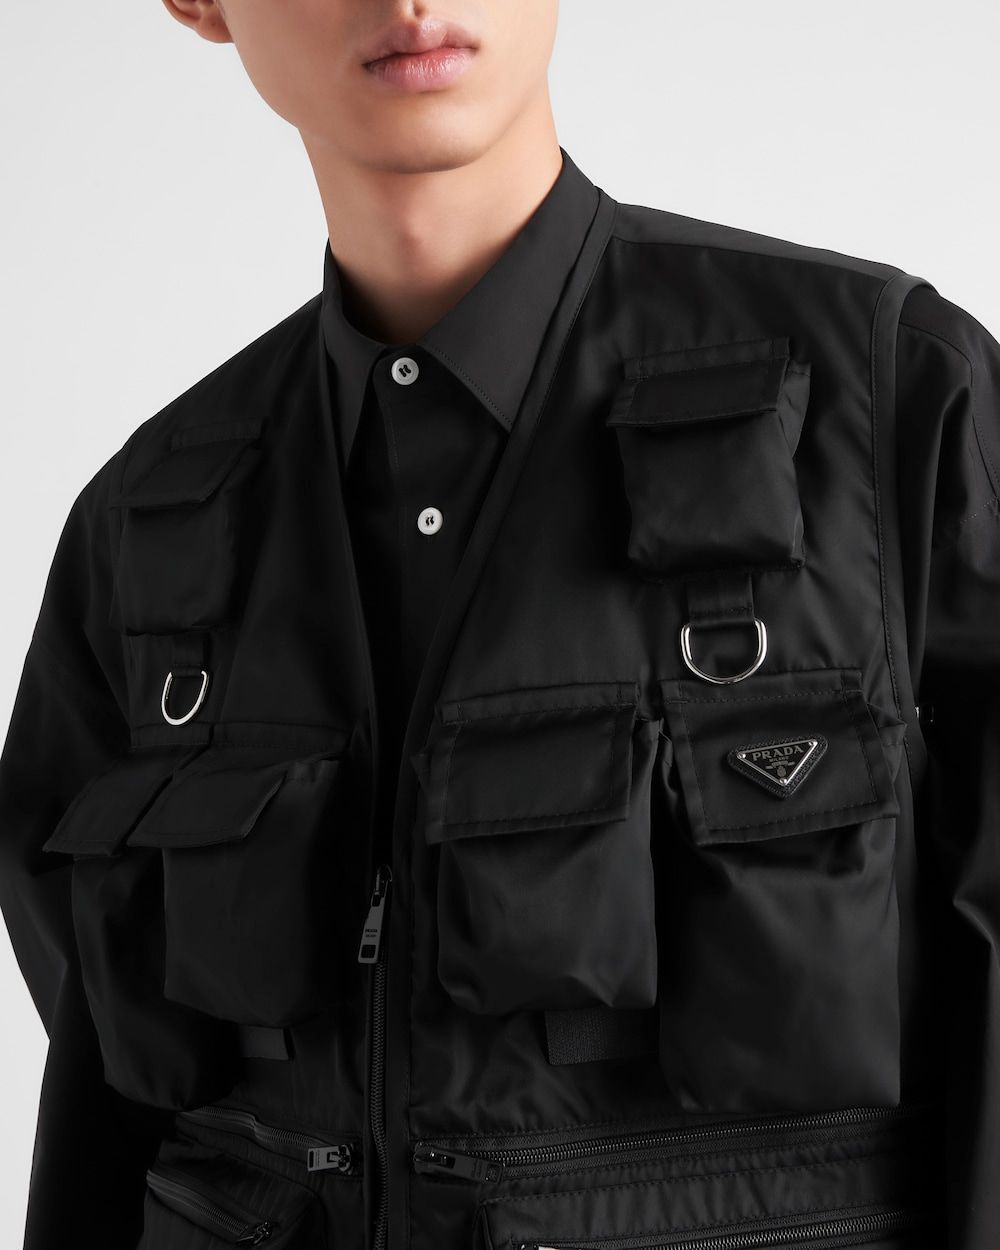 Áo vest đen thanh lịch cho nam - Thân thiện với môi trường và thời trang